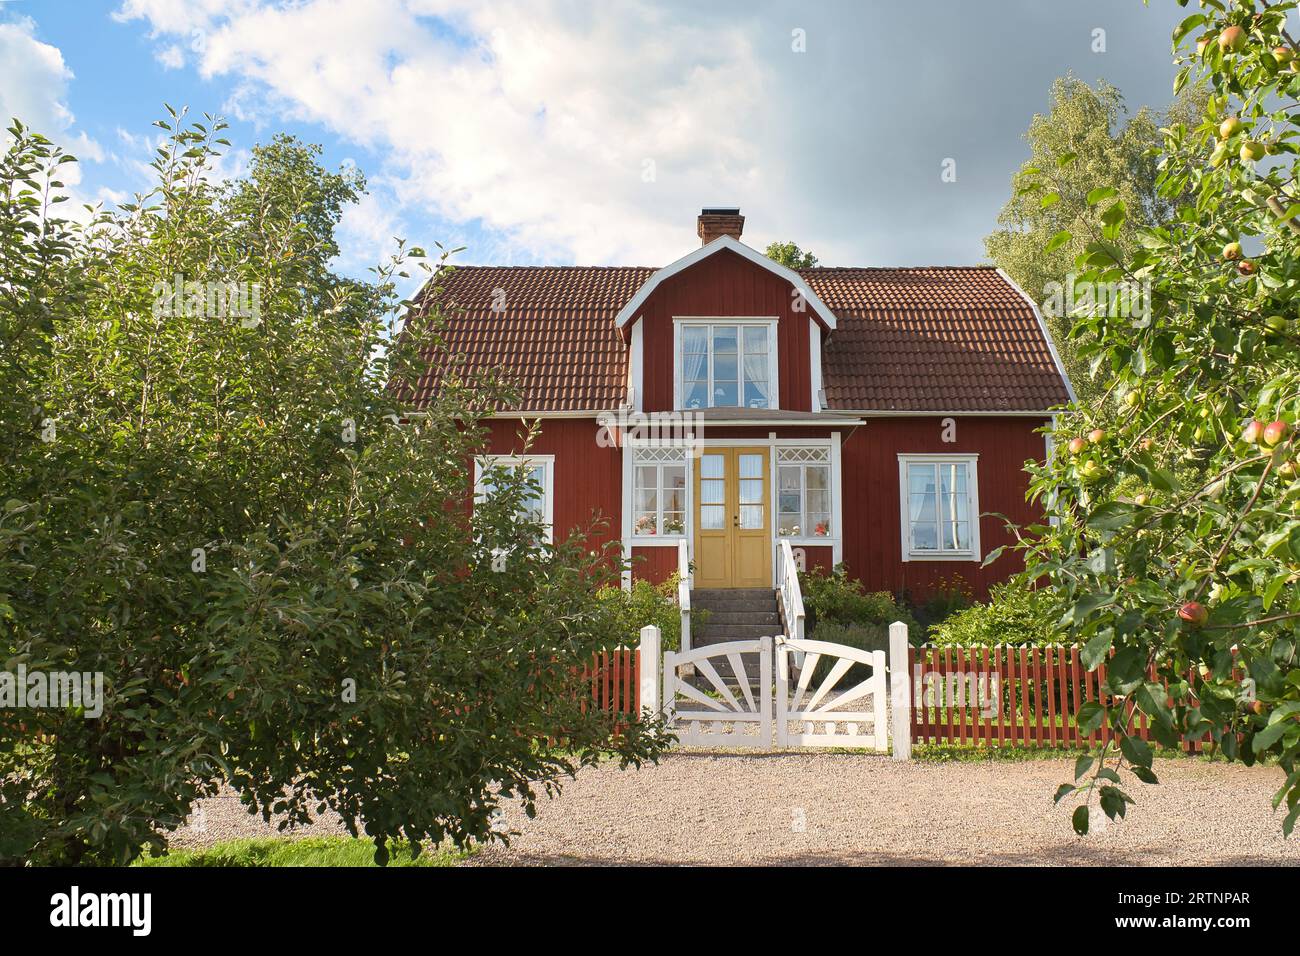 Ein typisches rot-weißes schwedisches Haus im Kleinen. Weißes Gartentor, brauner Zaun. Grüner Rasen im Garten. Bäume im Vordergrund. Blauer Himmel mit sm Stockfoto